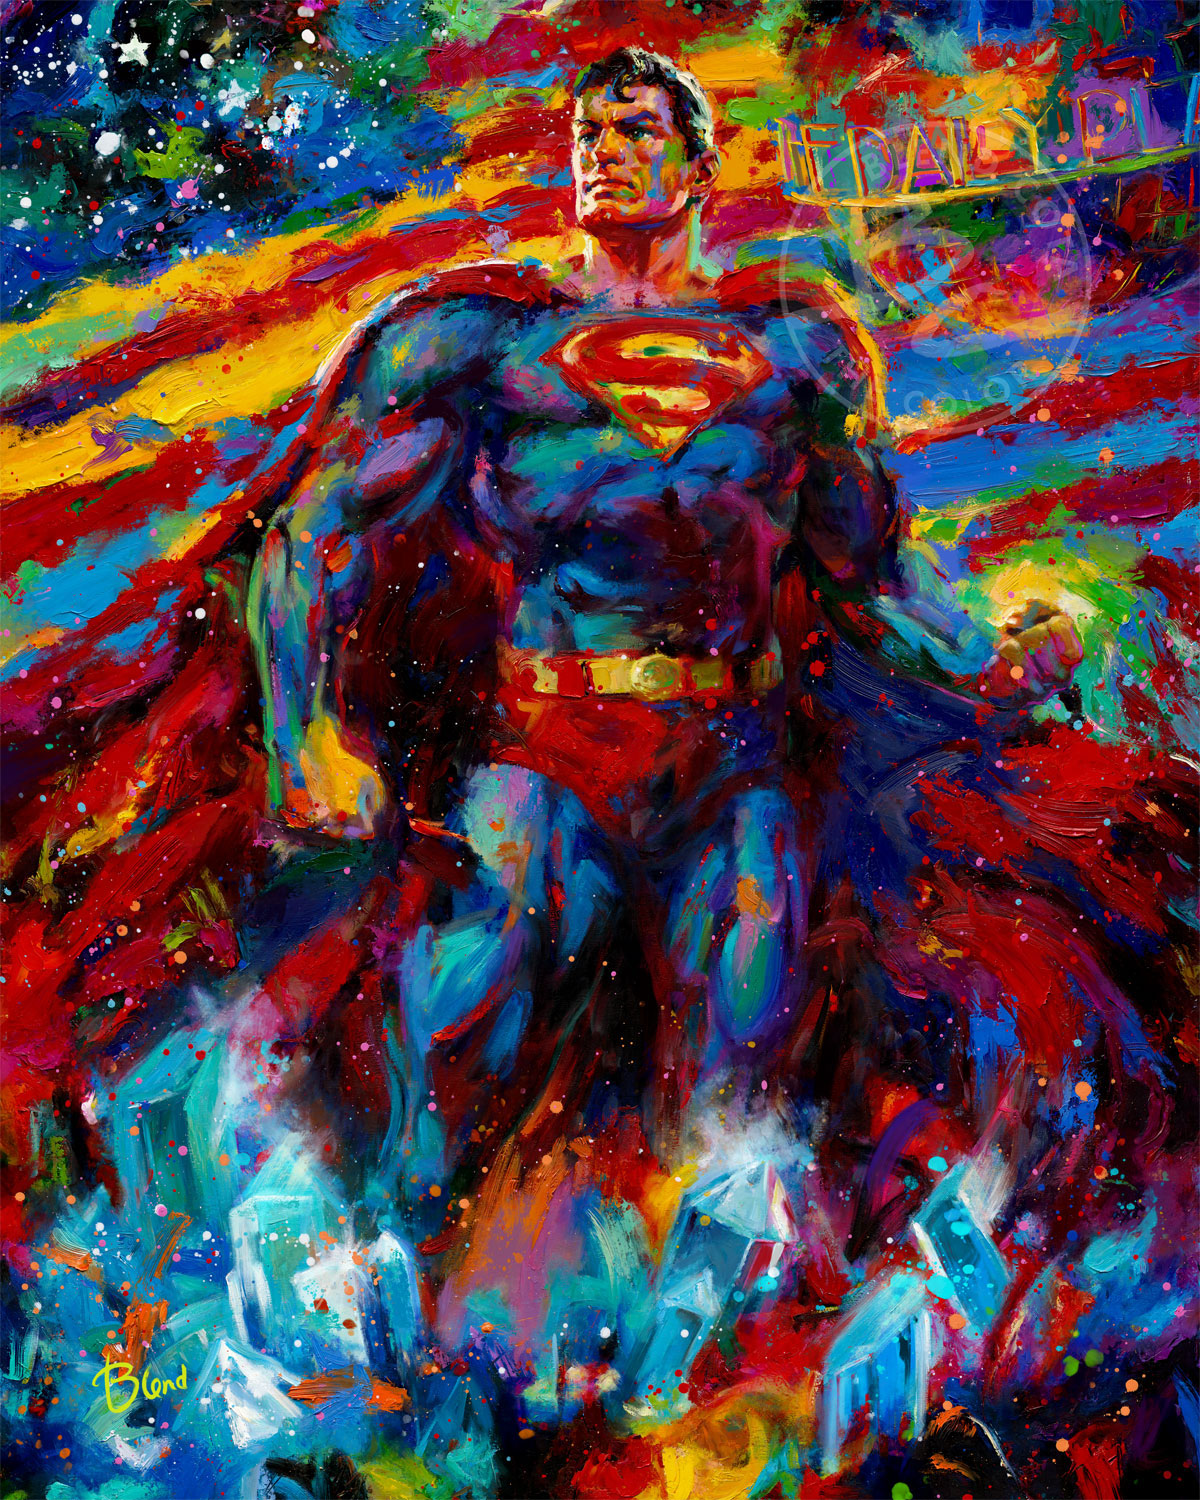 Superman Last Son Of Krypton